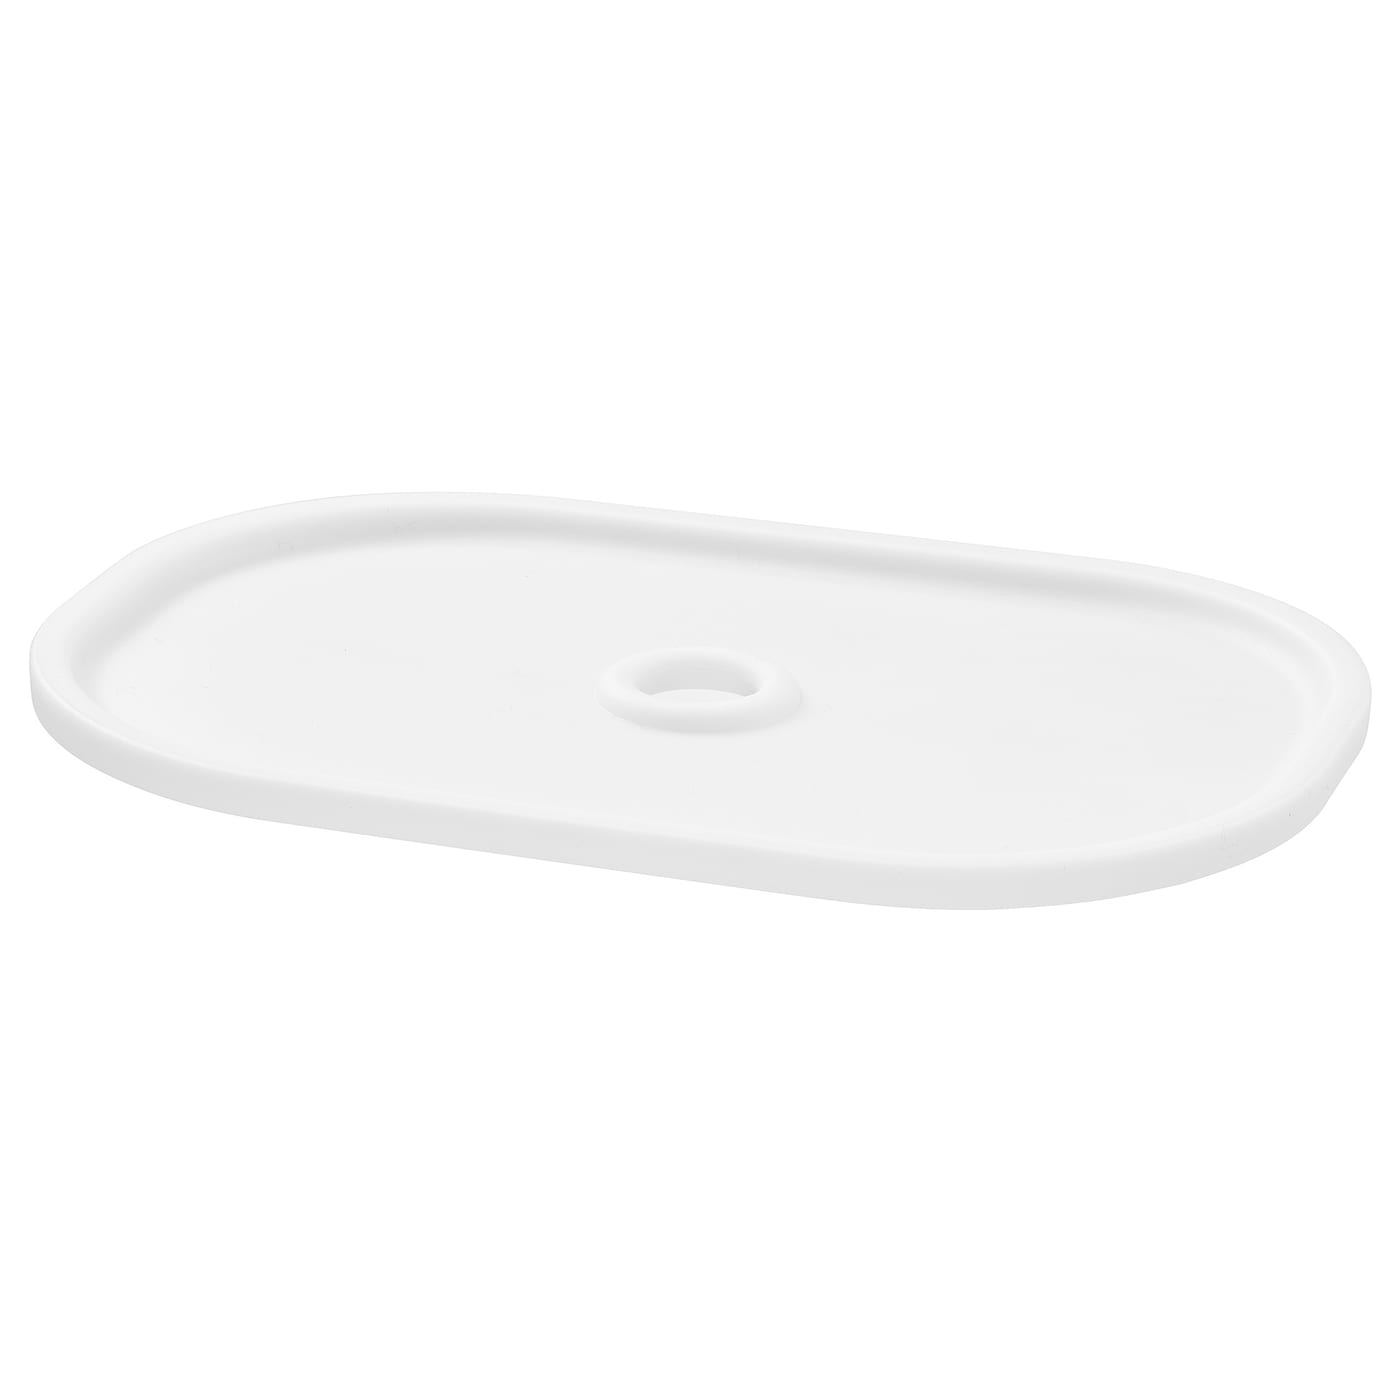 Крышка ящика для хранения - TROFAST IKEA/ ТРУФАСТ ИКЕА,  28х20 см, белый